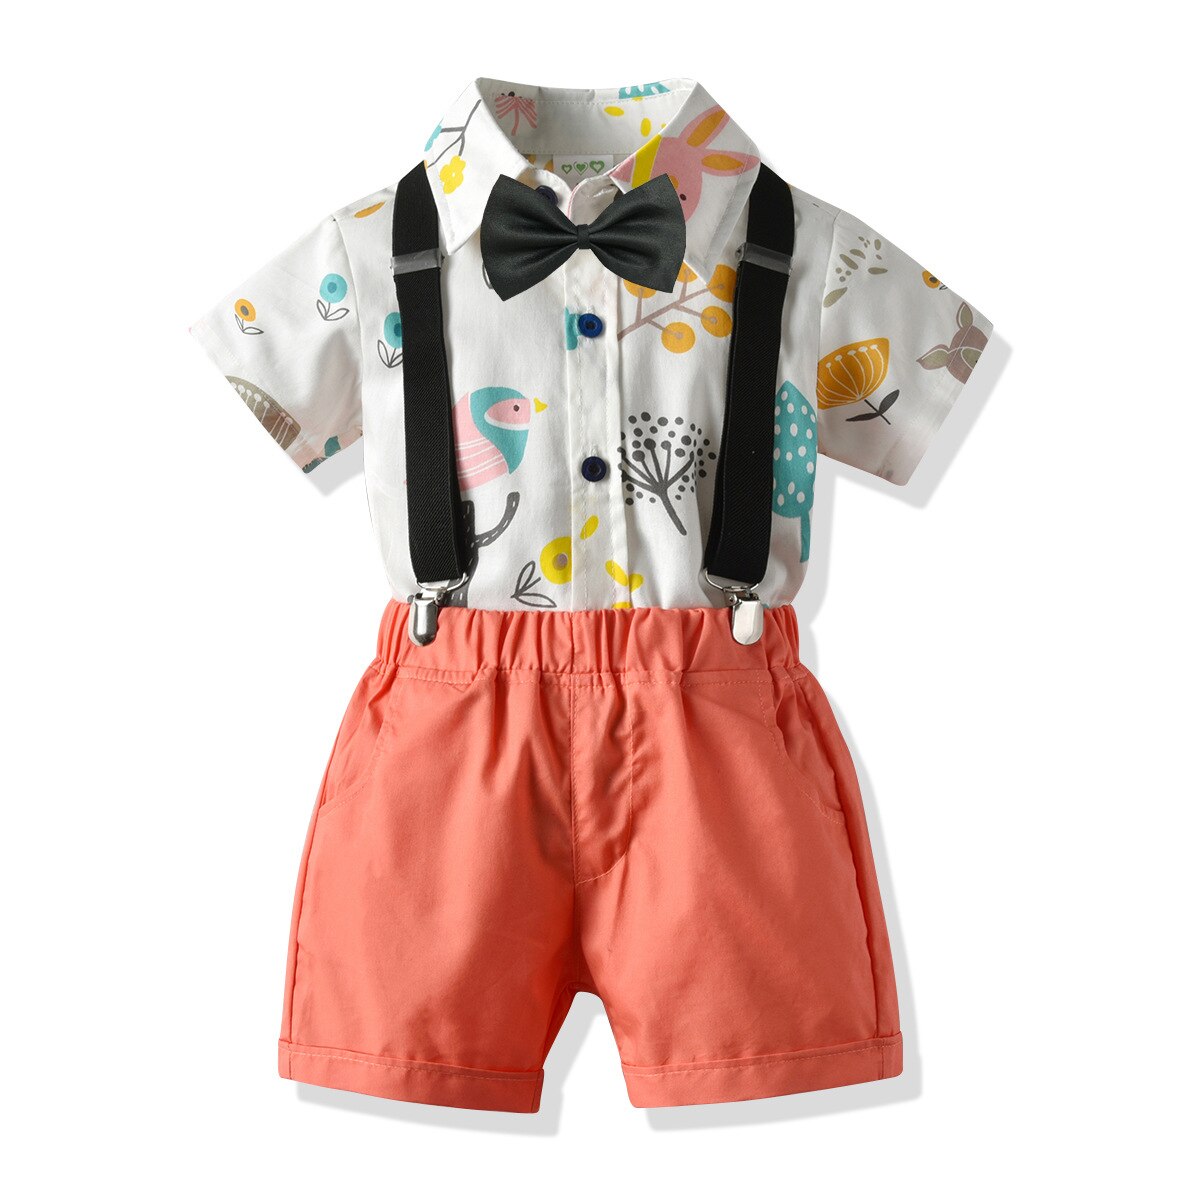 Zomer Baby Kleding Kinderen Gentleman Pak Jongen Strikje + Afdrukken Shirt + Broek Driedelig Pak jongens Avondjurk